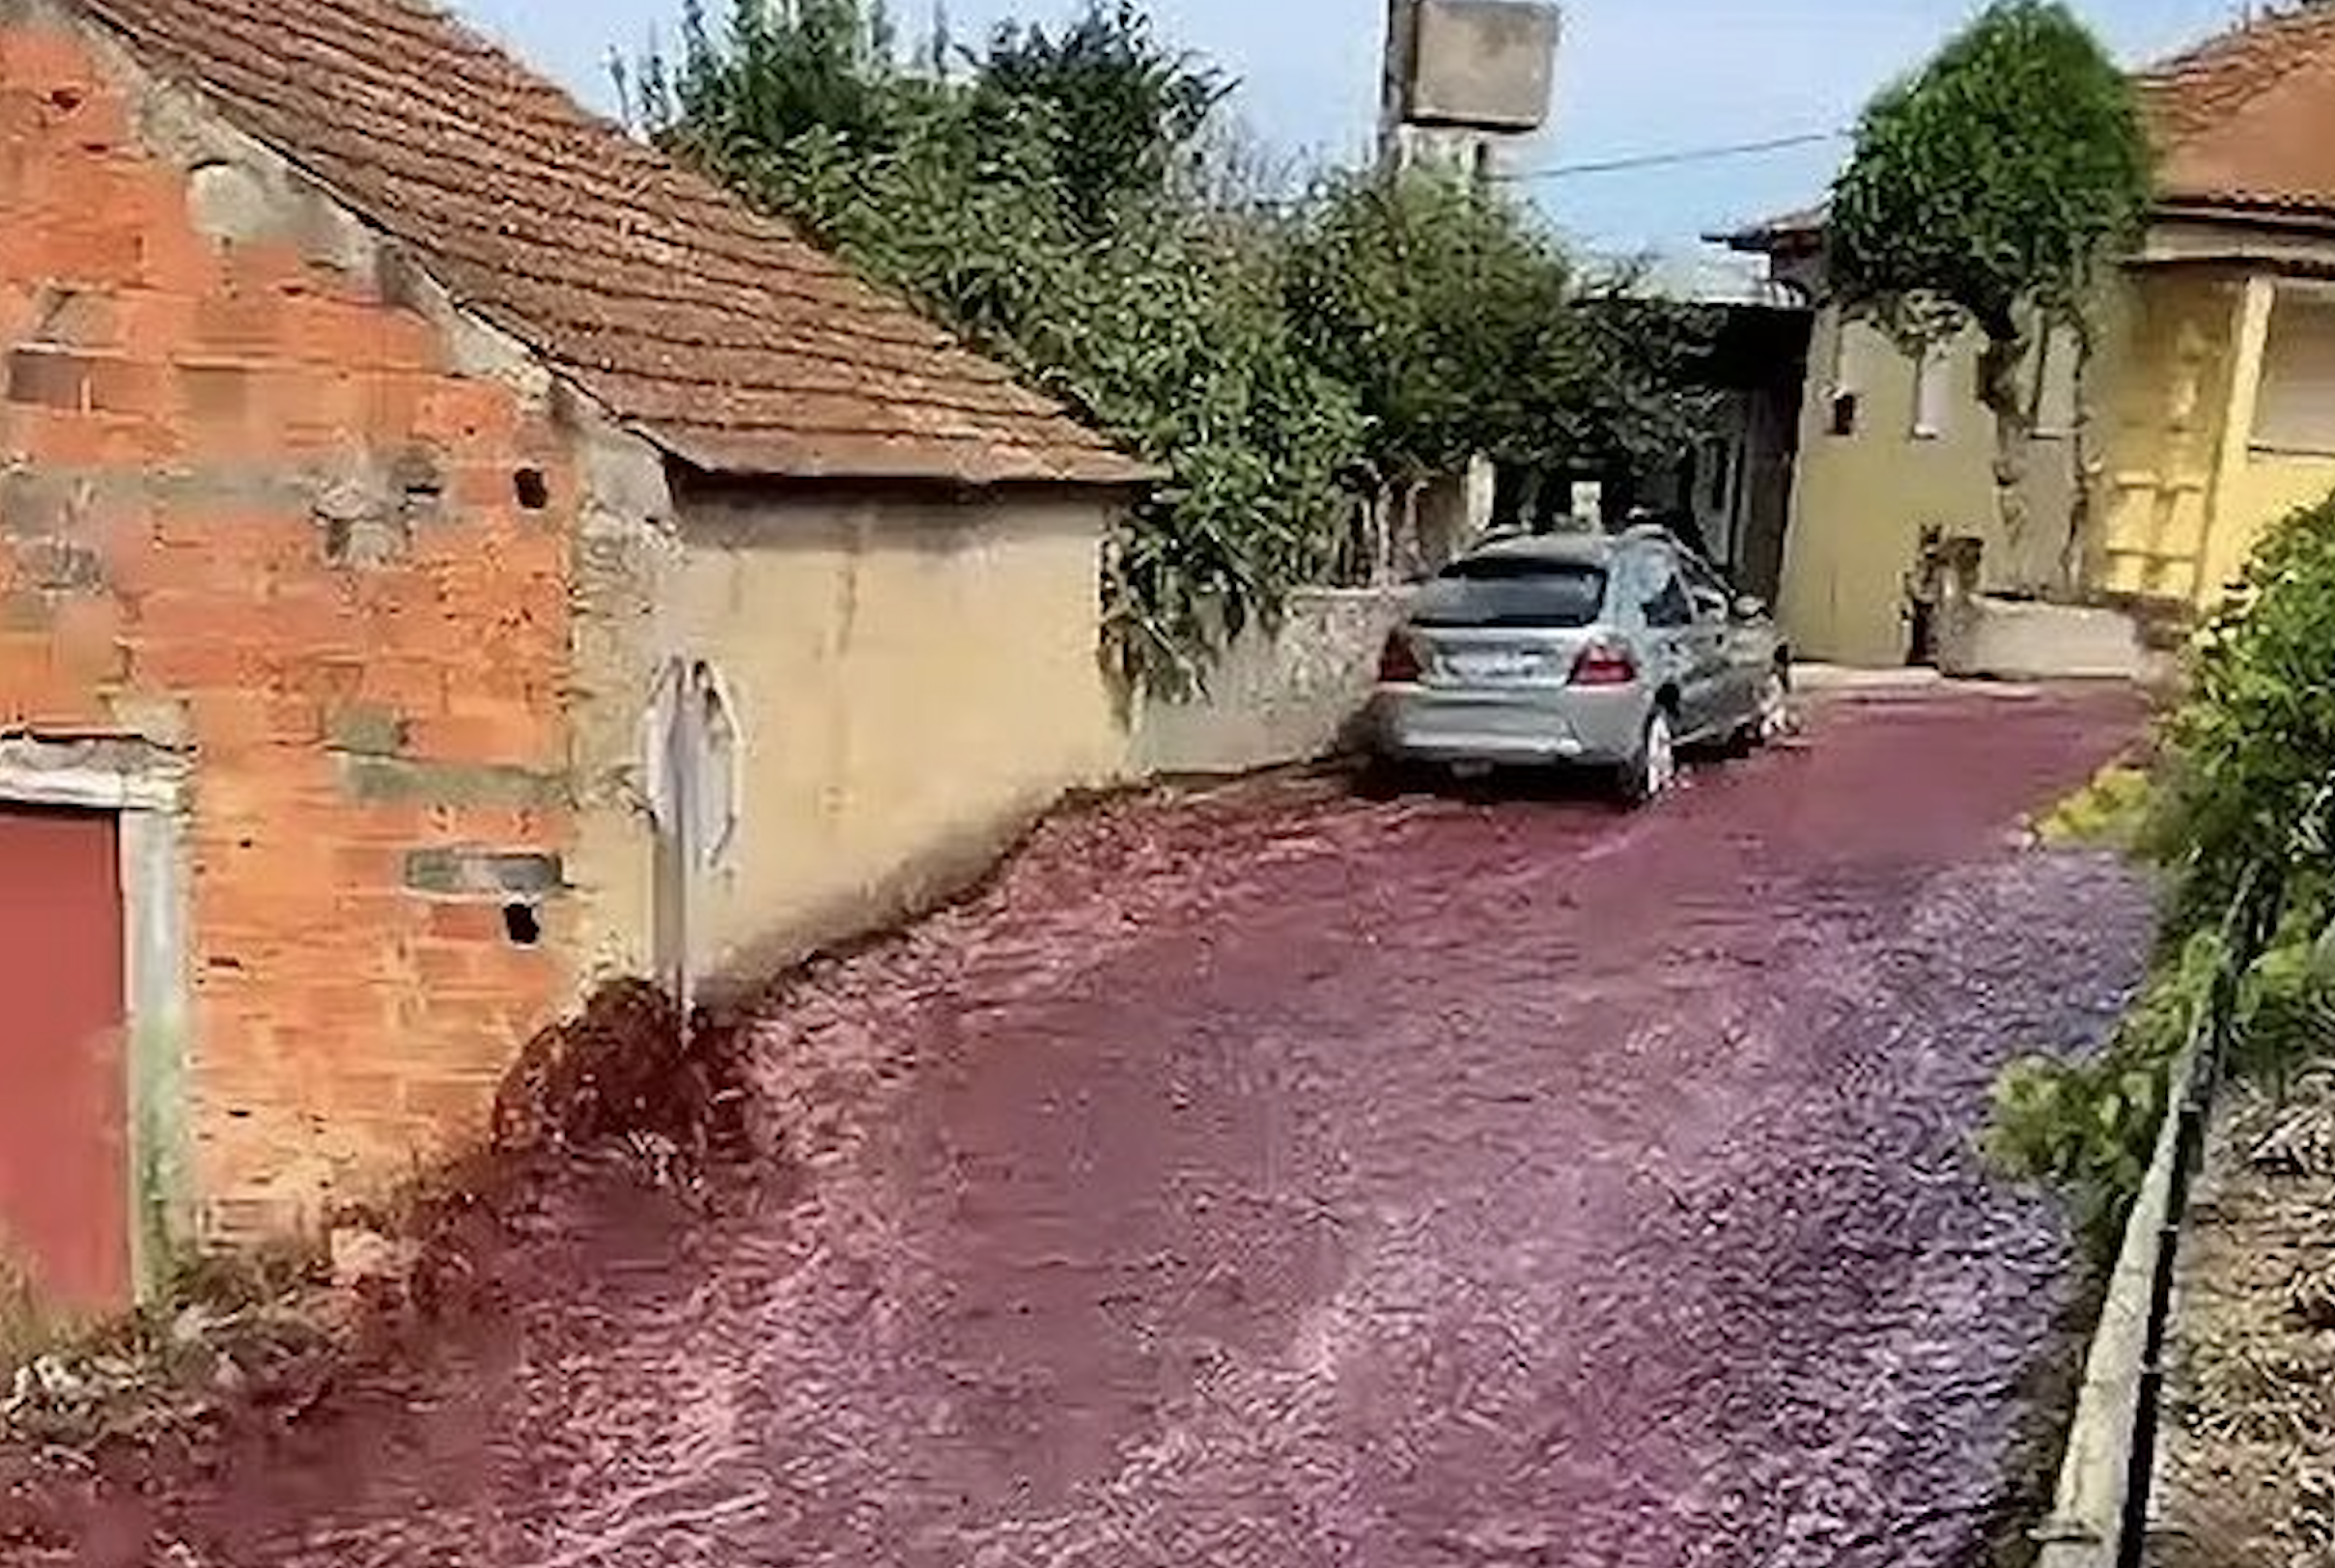 Derrame celestial: un río de vino tinto inunda las calles de un pueblo de Portugal